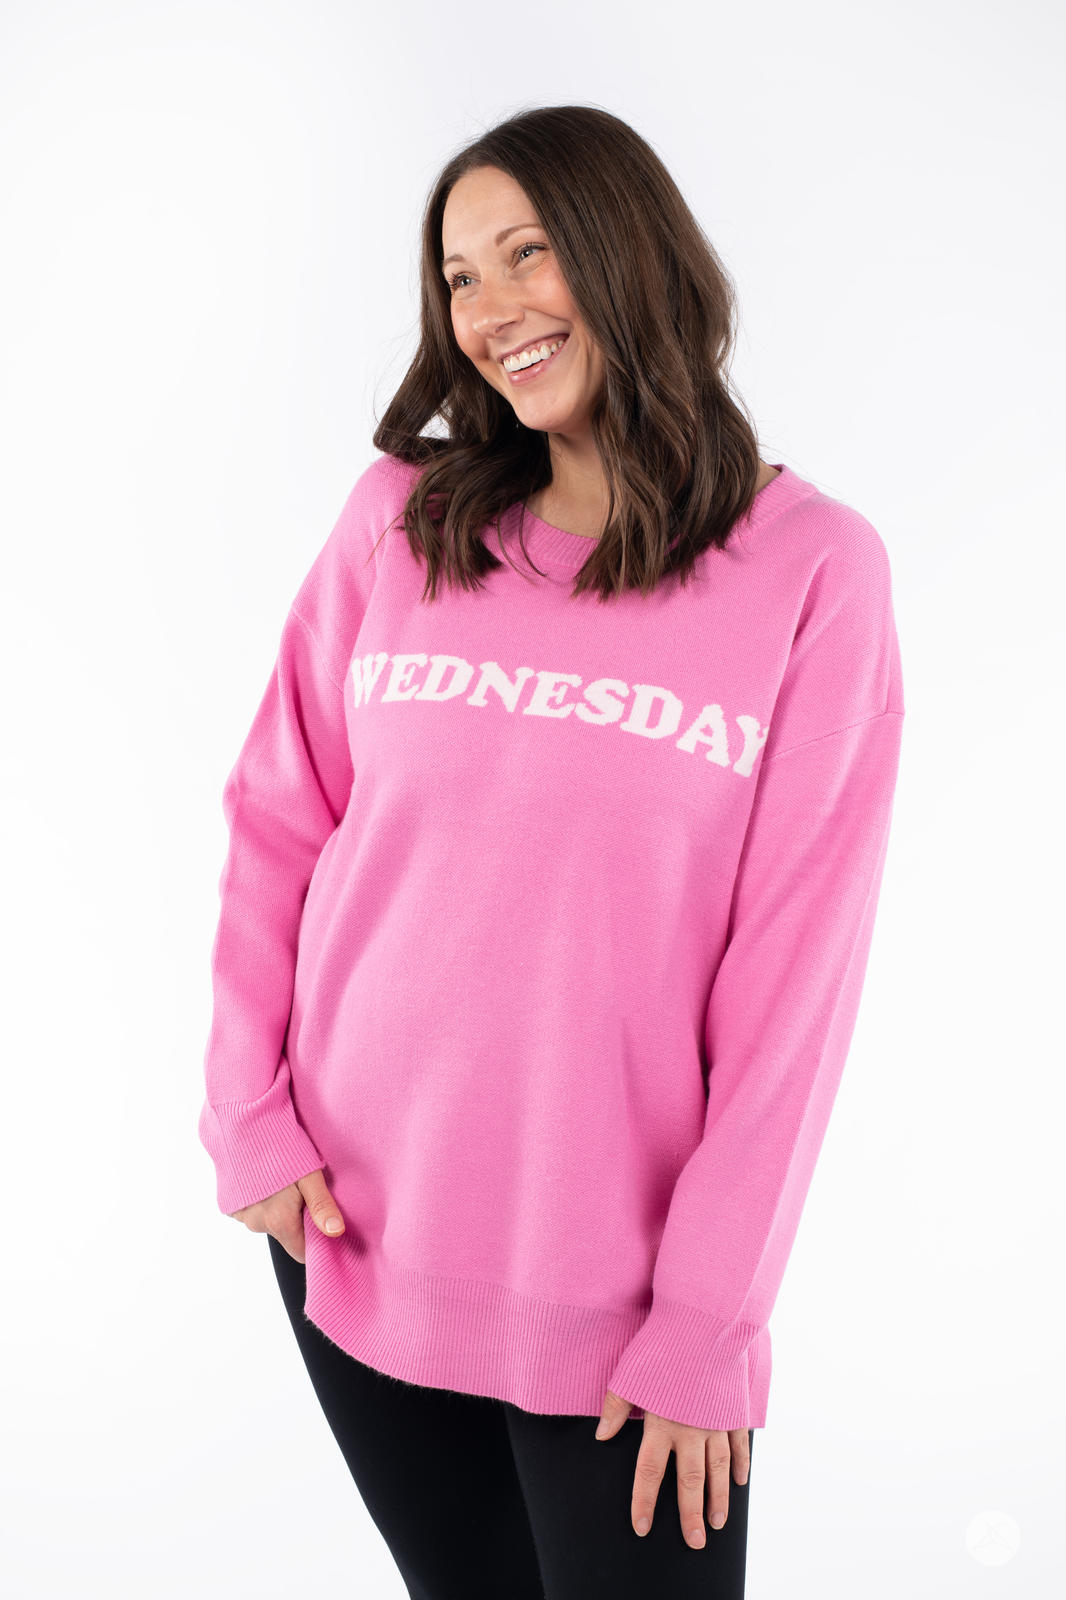 Wednesday Crew Neck Sweater